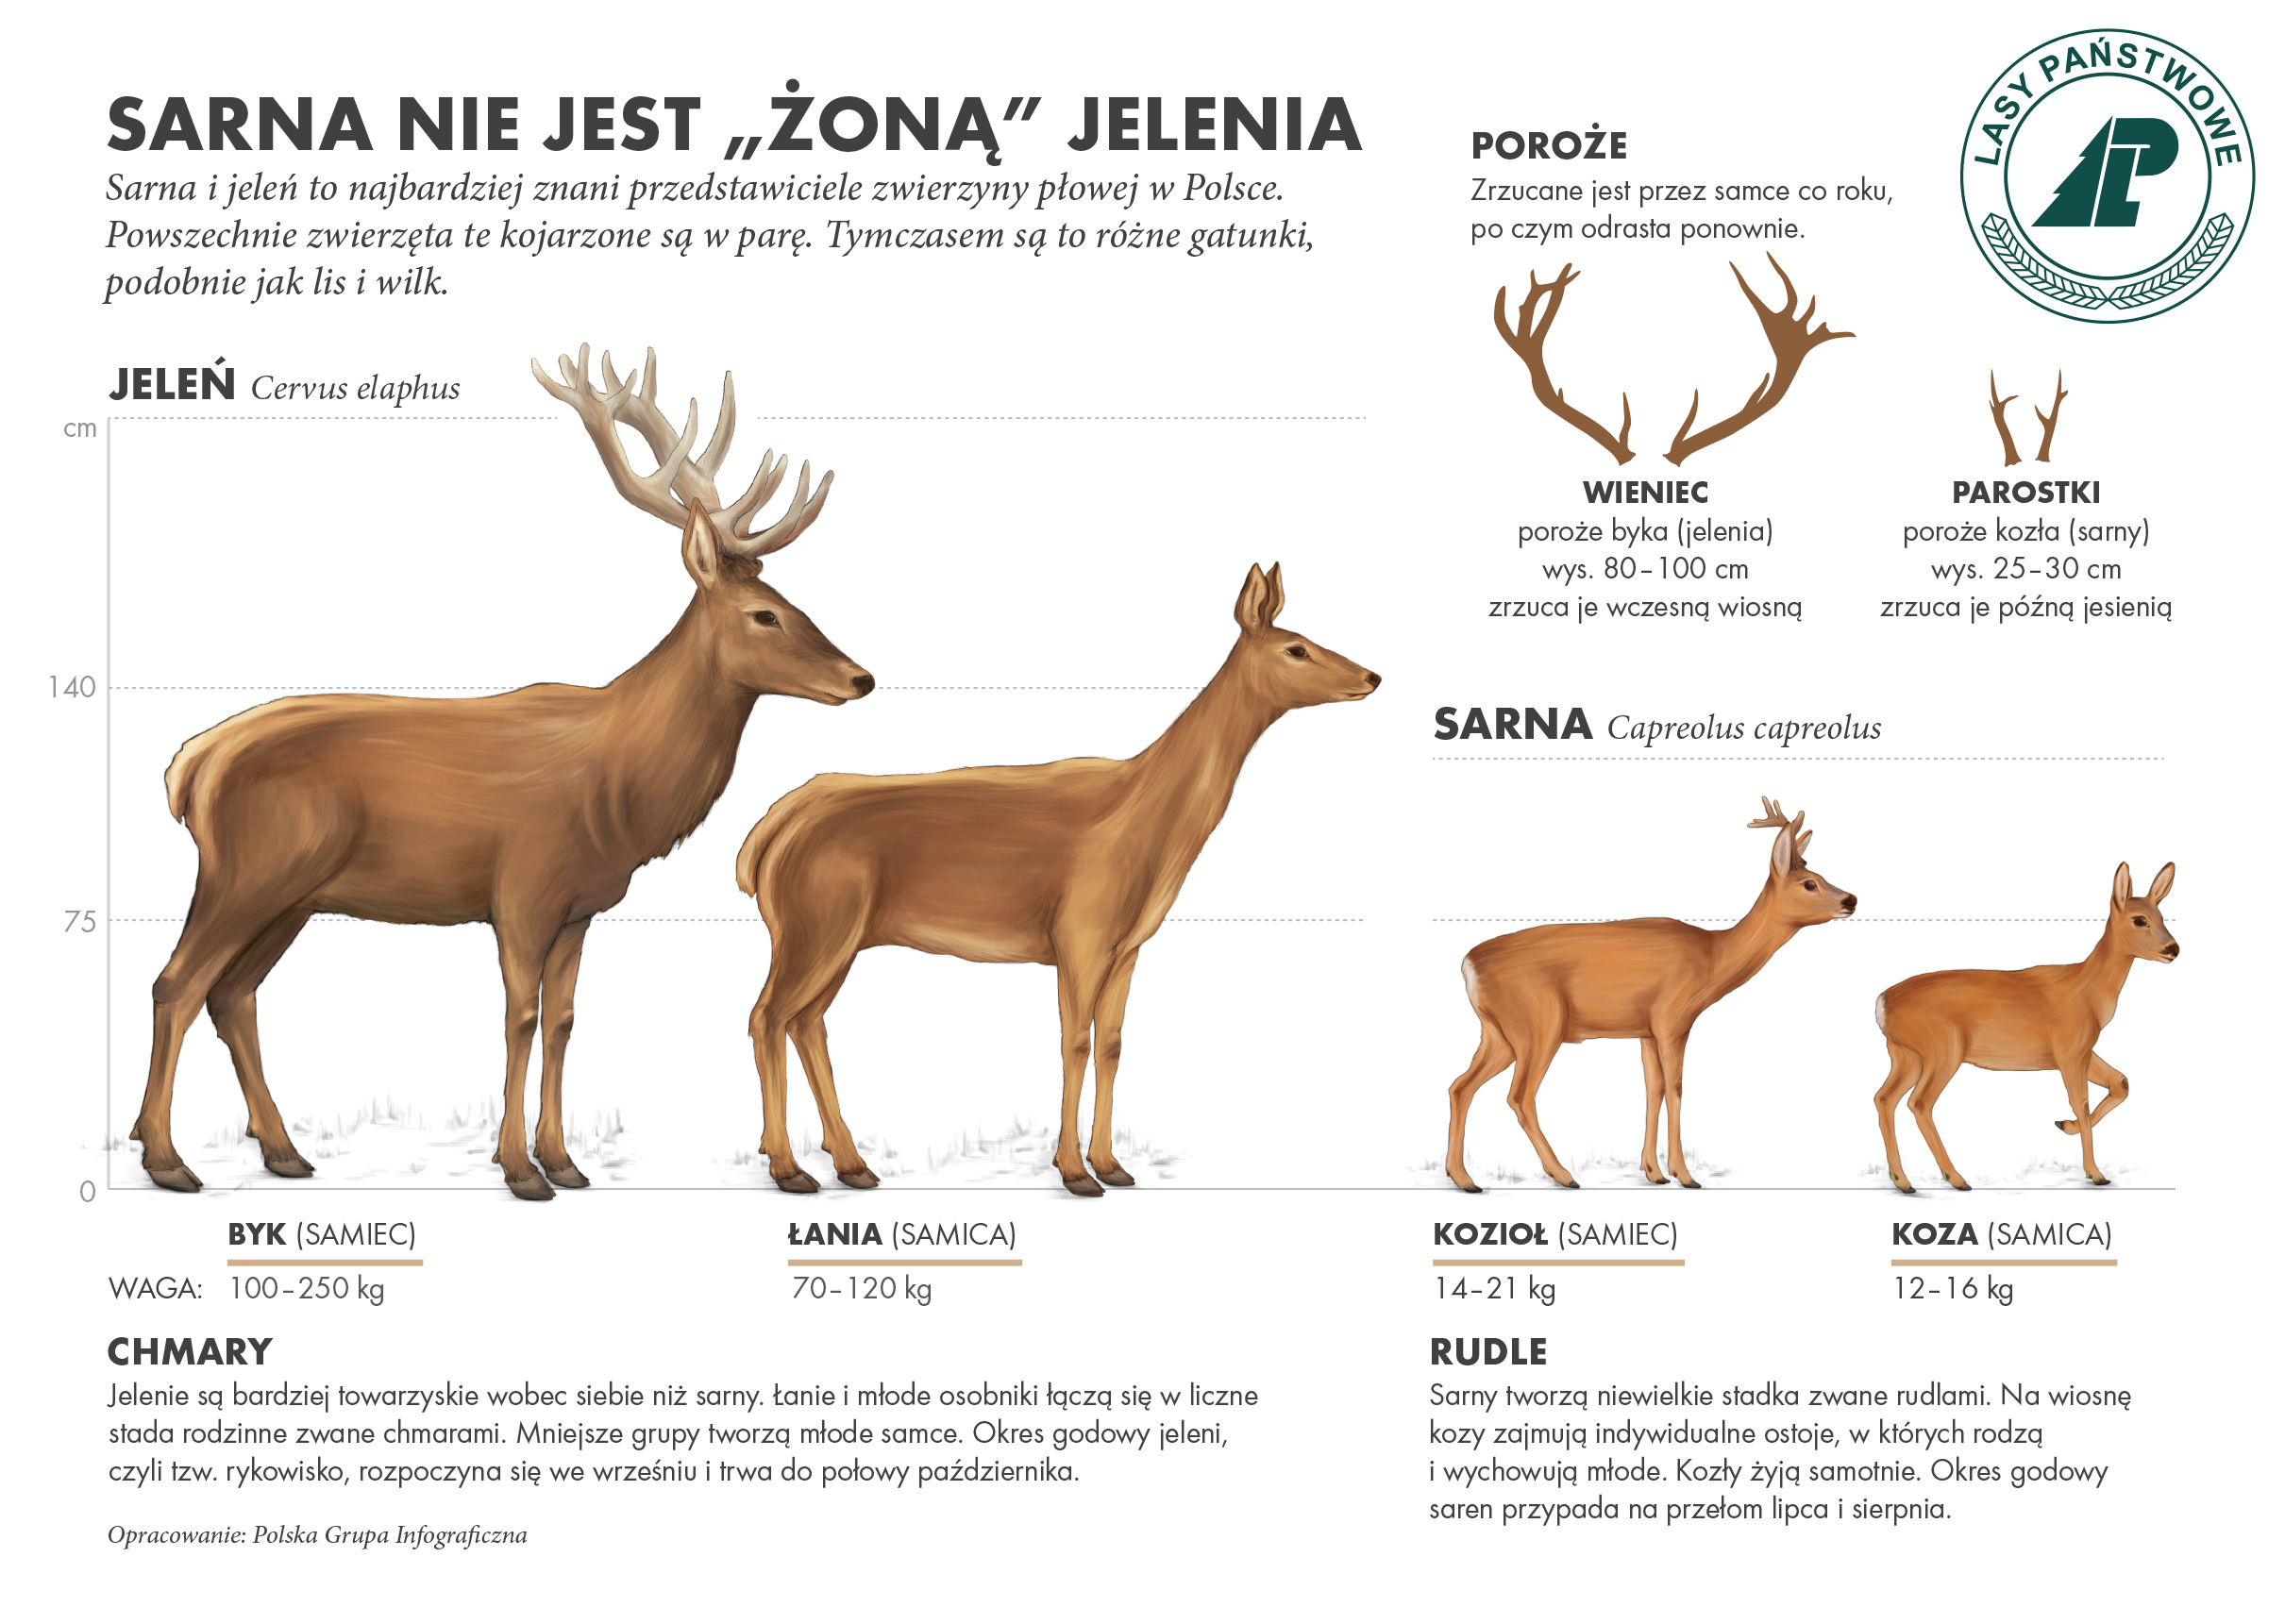 Infografika przedtswia różnice w budowie ciała między sarną a jeleniem.